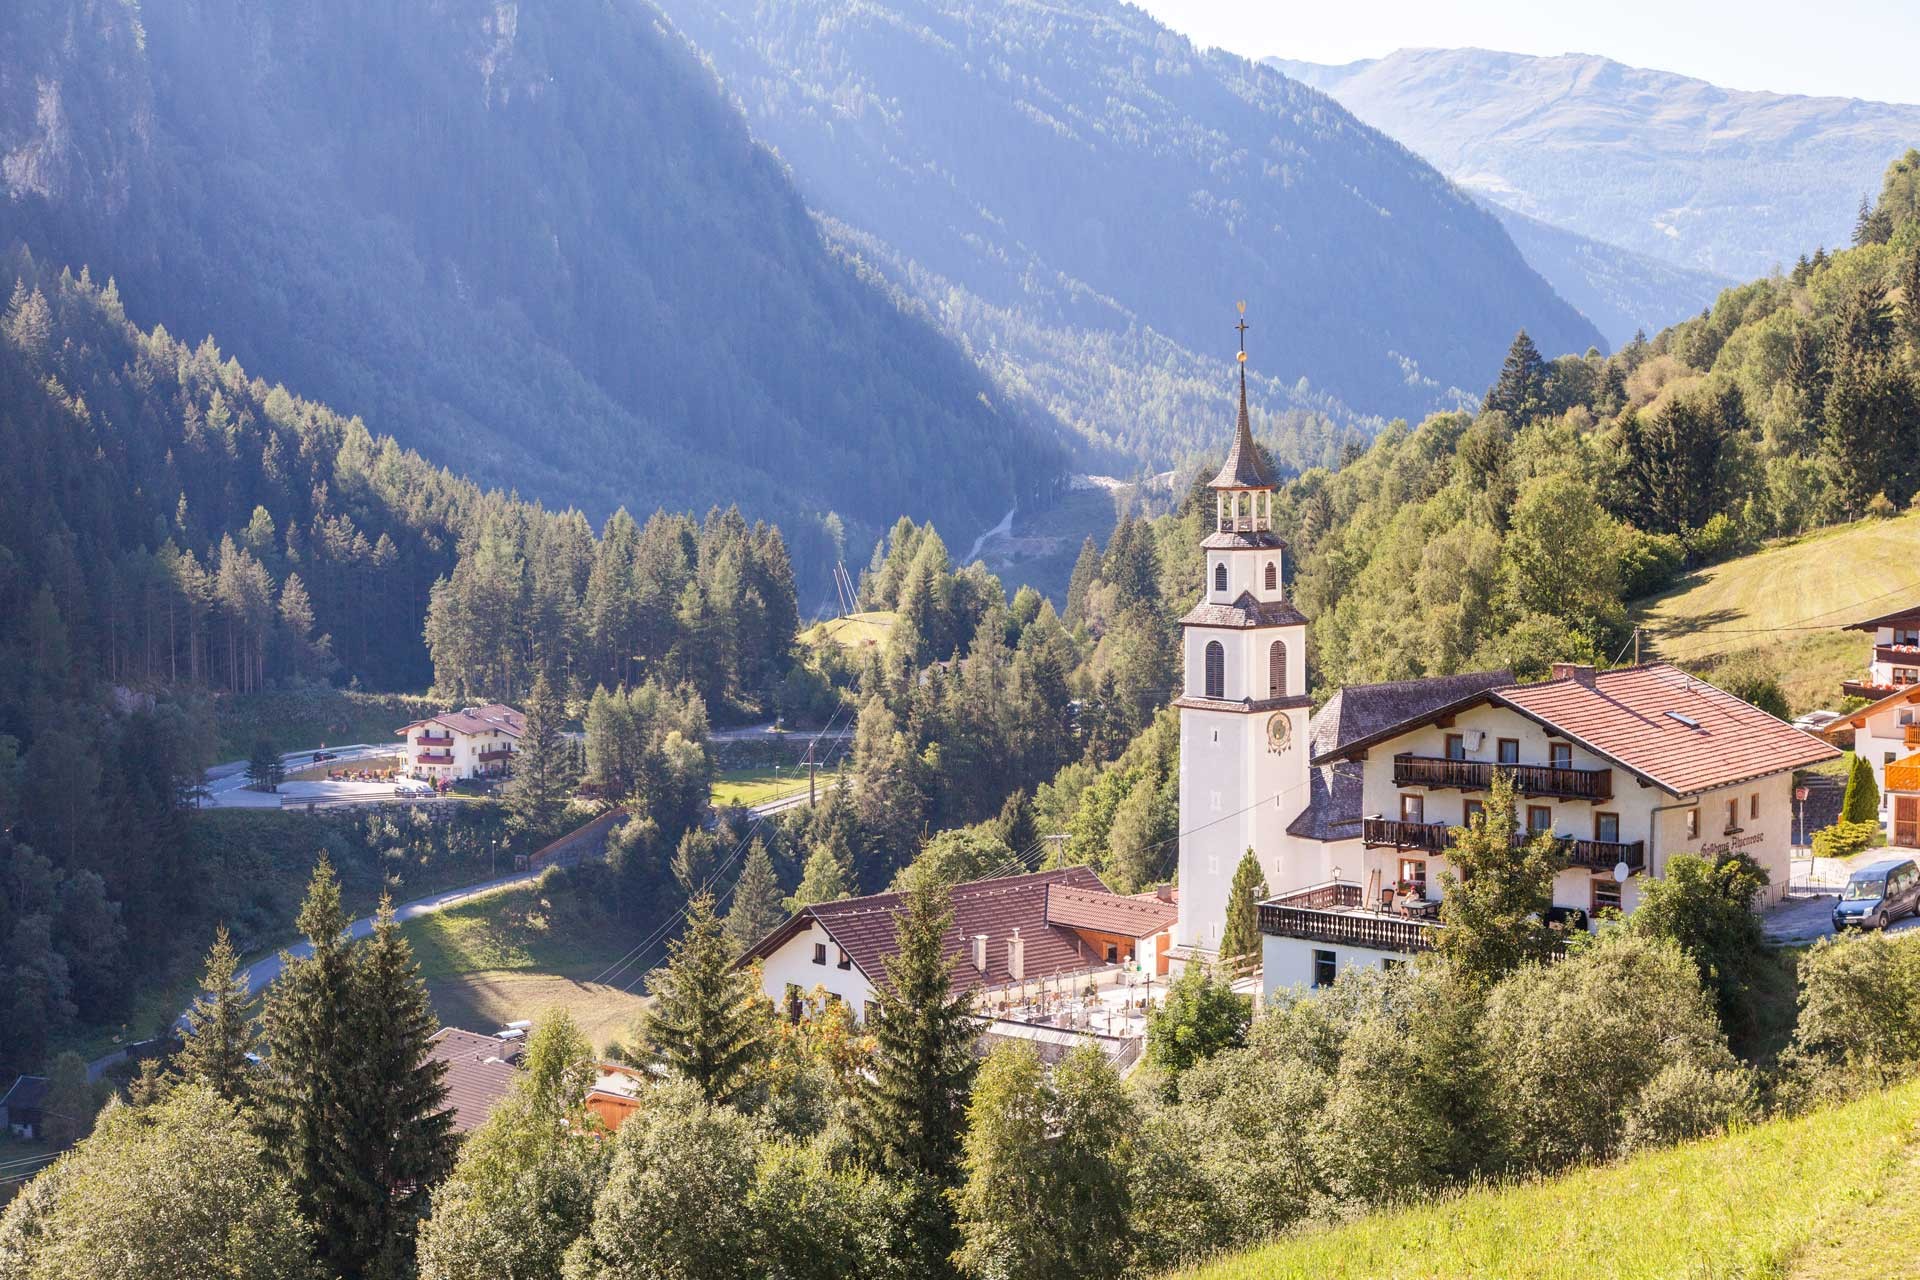 St Leonhard in Pitztal, Tyrol │Pitztal